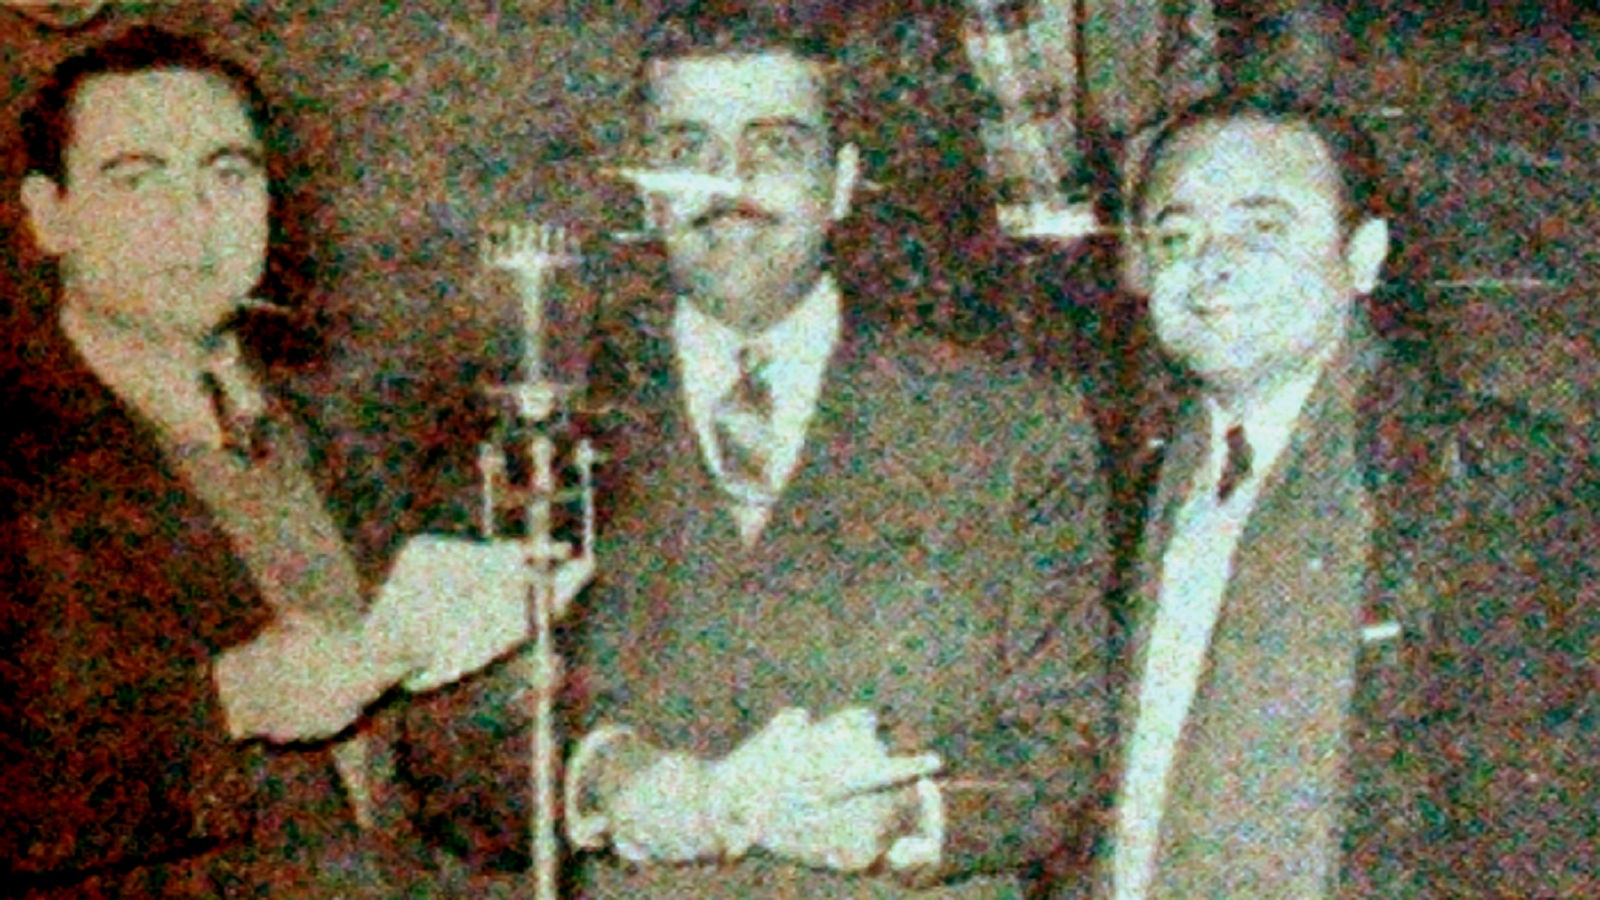 مع حسن عبد النبي وميشال بريدي في "محطة الشرق الأدنى"، 1955.